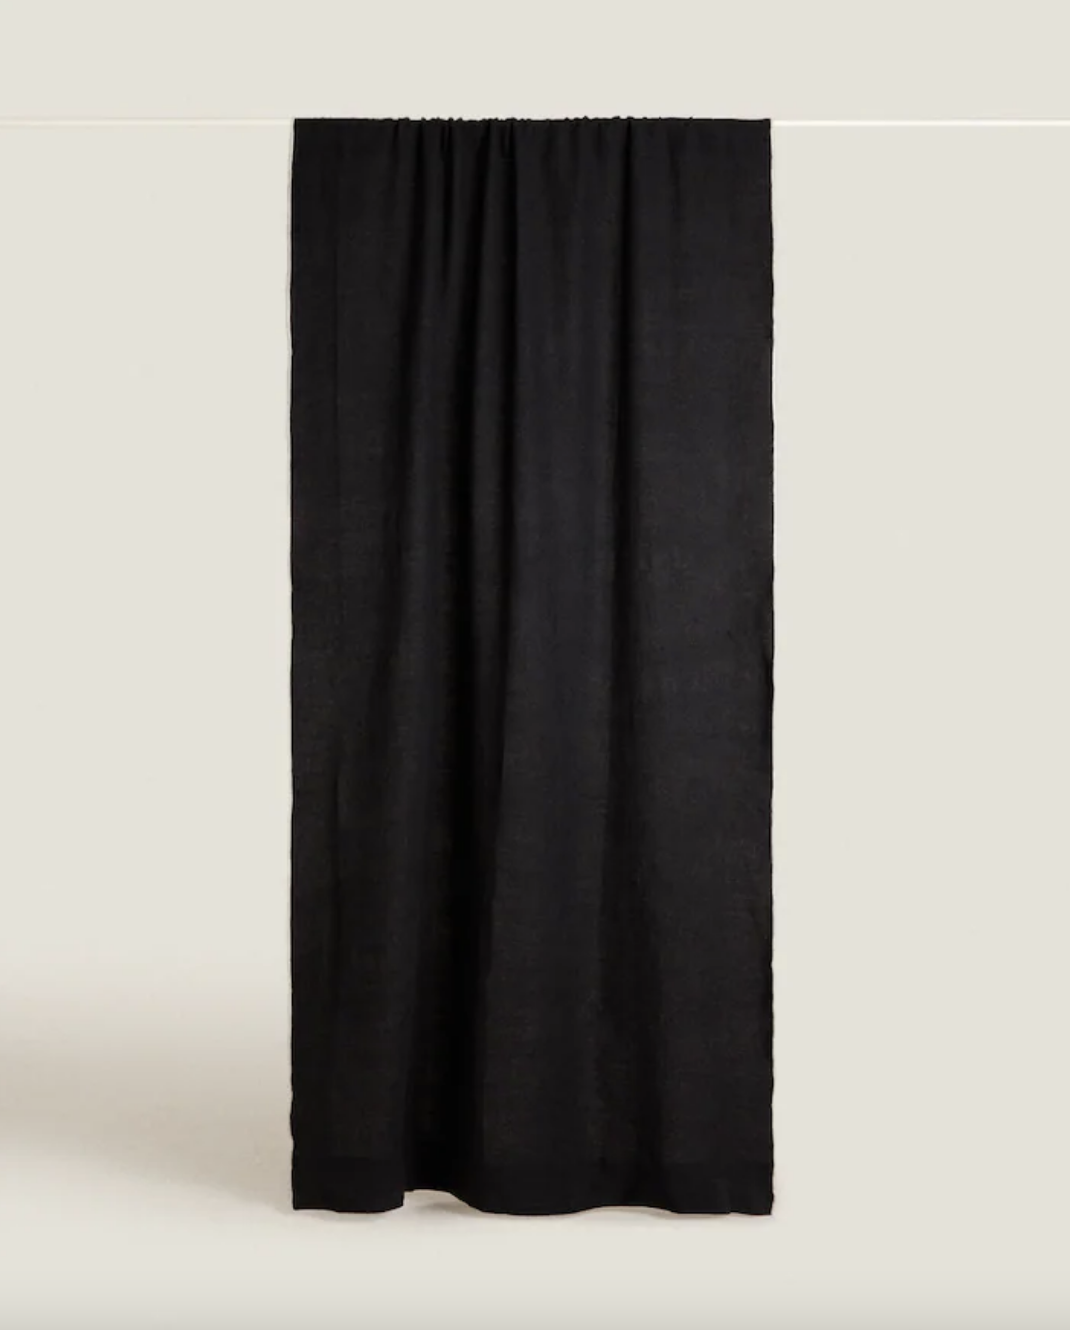 Cortina en color negro y muy elegante de Zara Home.